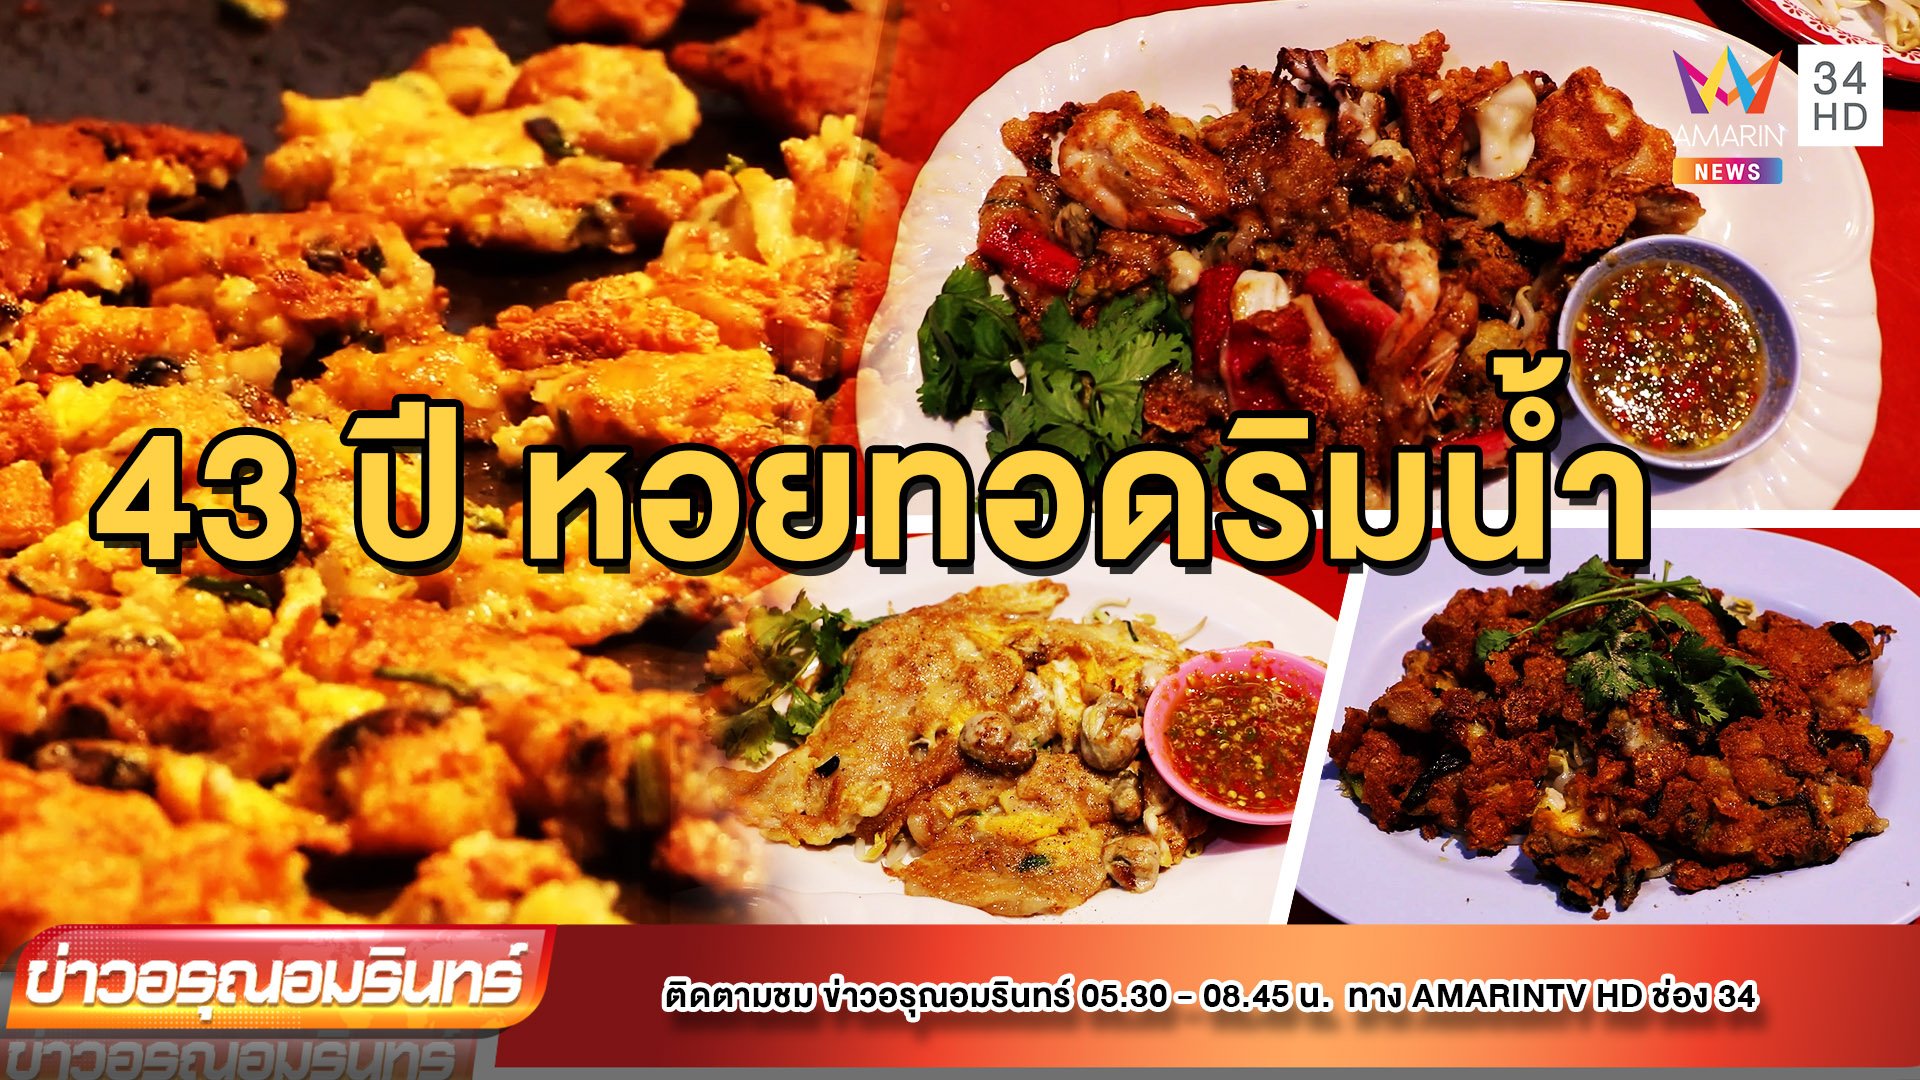 หอยทอด - ผัดไทยริมแม่น้ำน่าน ร้านเด็ดเมืองสองแคว | ข่าวอรุณอมรินทร์ | 14 พ.ย. 65 | AMARIN TVHD34